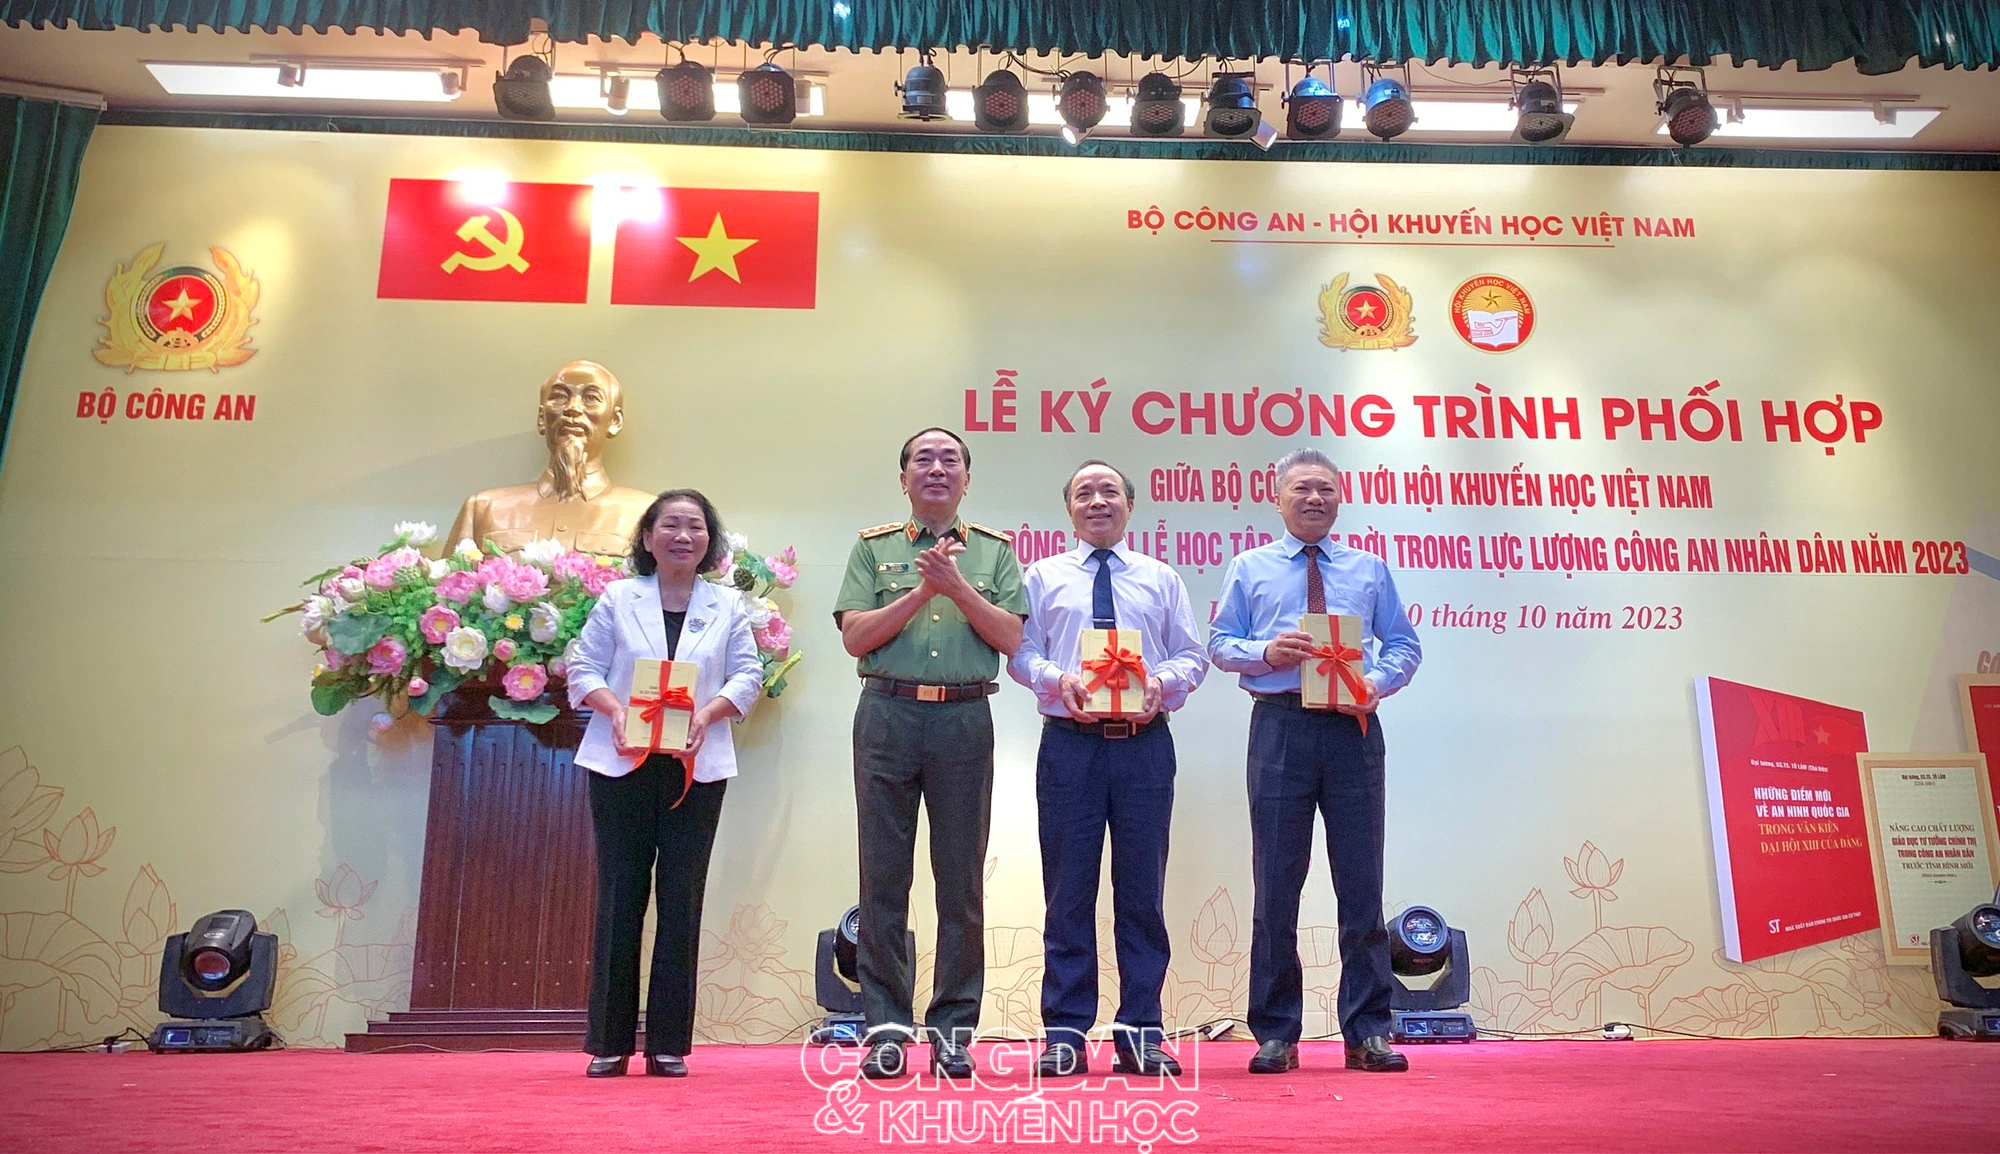 Hội Khuyến học Việt Nam và Bộ Công an phối hợp đẩy mạnh khuyến học – khuyến tài trong lực lượng công an nhân dân - Ảnh 8.